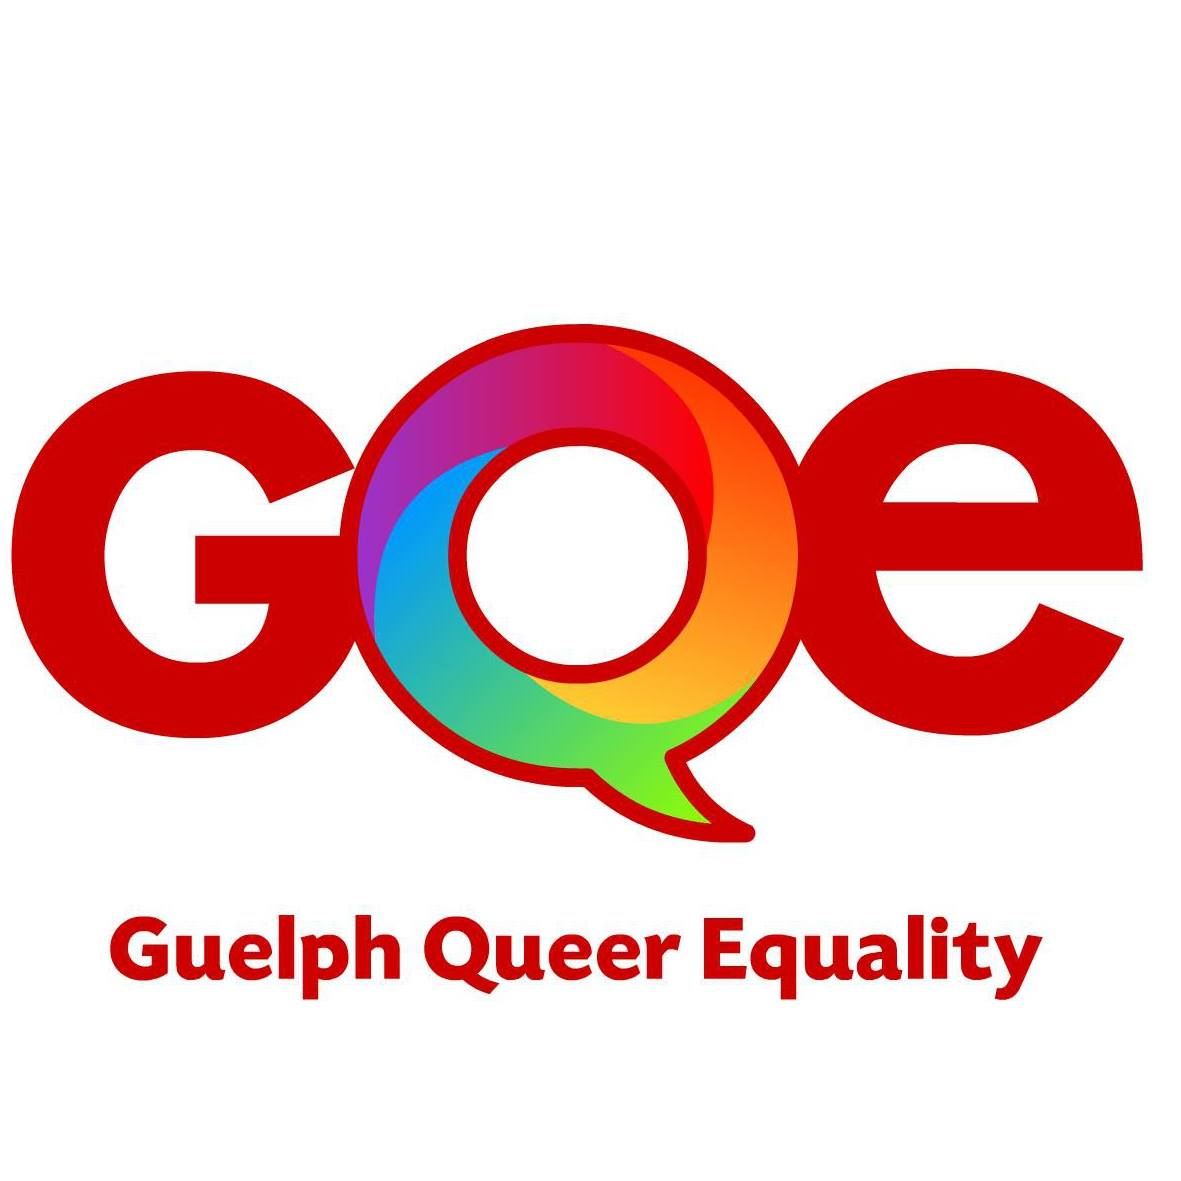 GQE logo